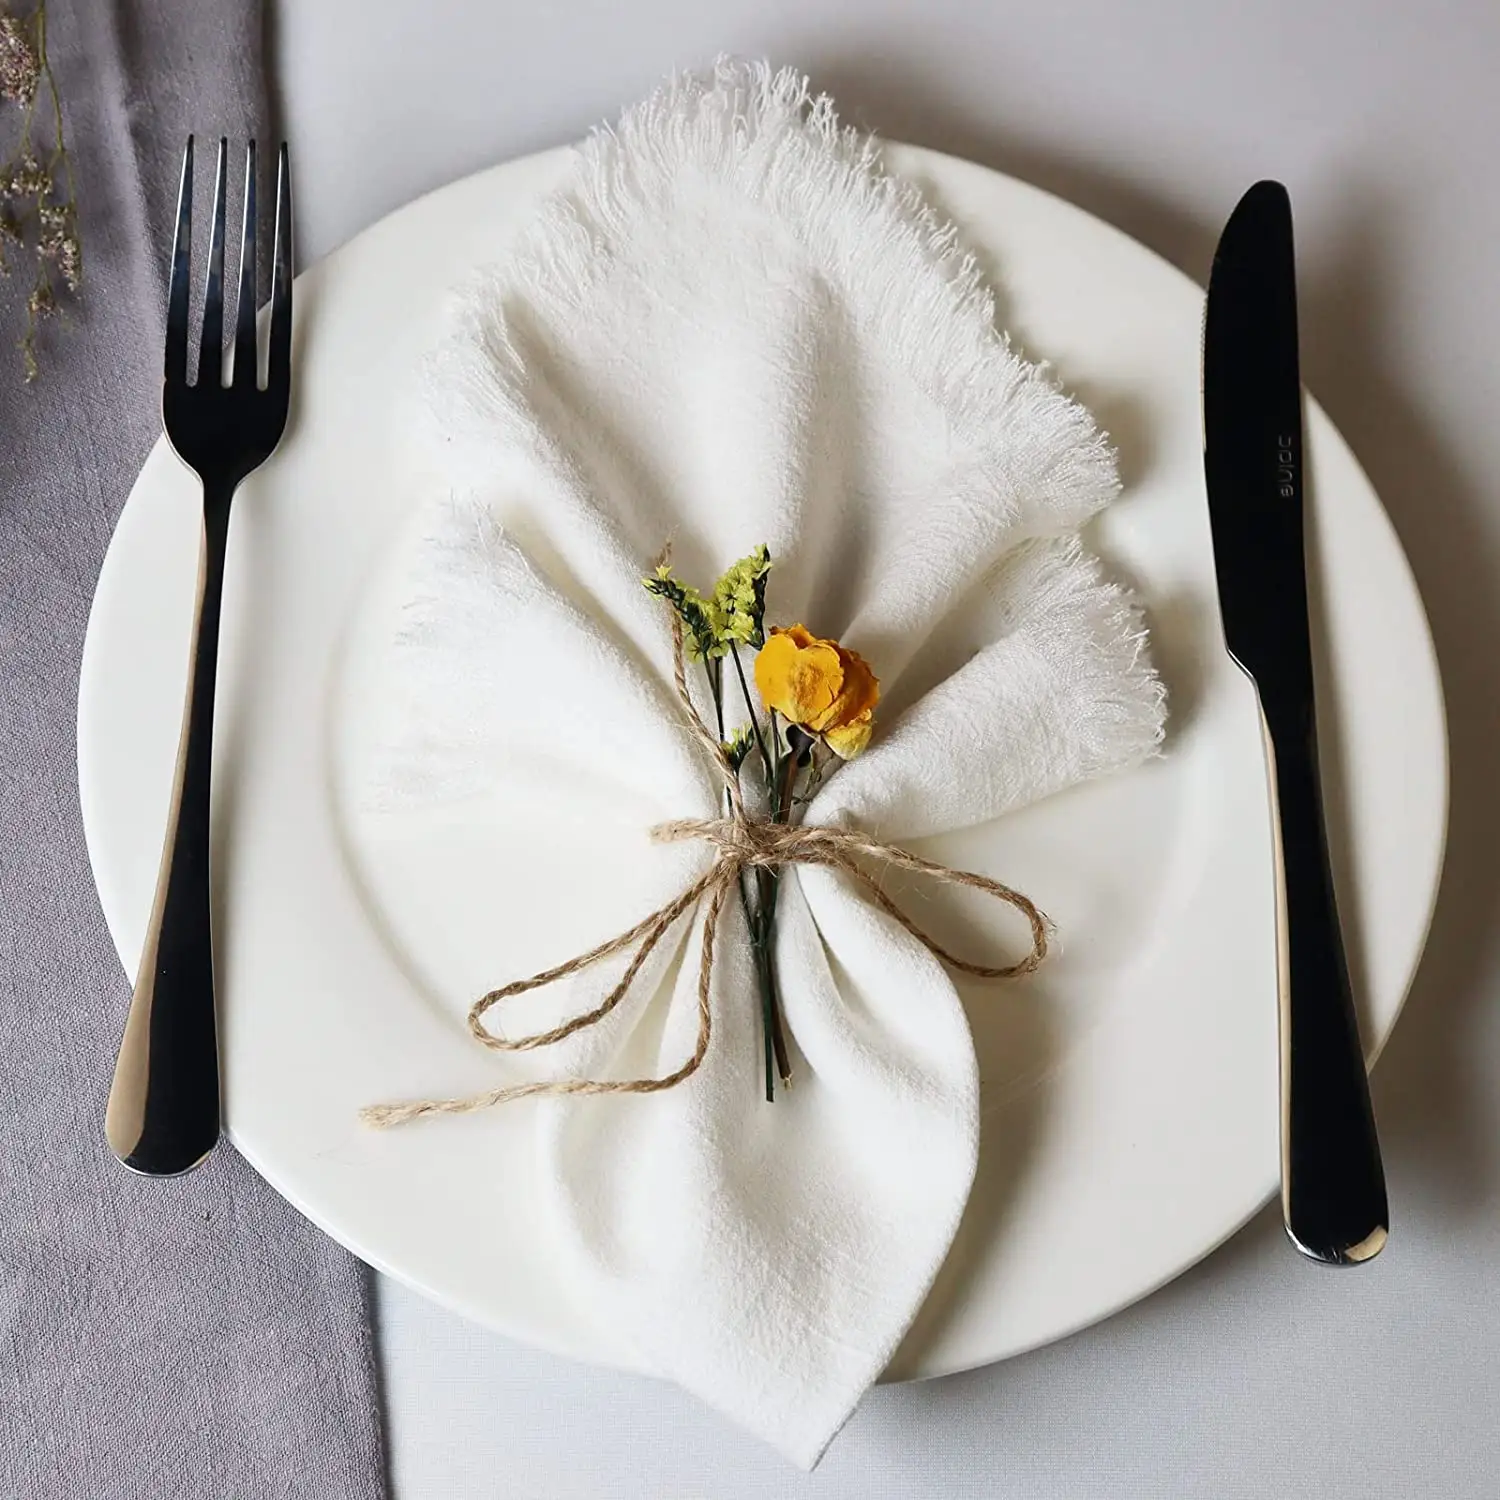 Set 4 "17 inci makan malam pesta pernikahan sederhana persegi serbaguna katun Linen kain serbet dengan pinggiran